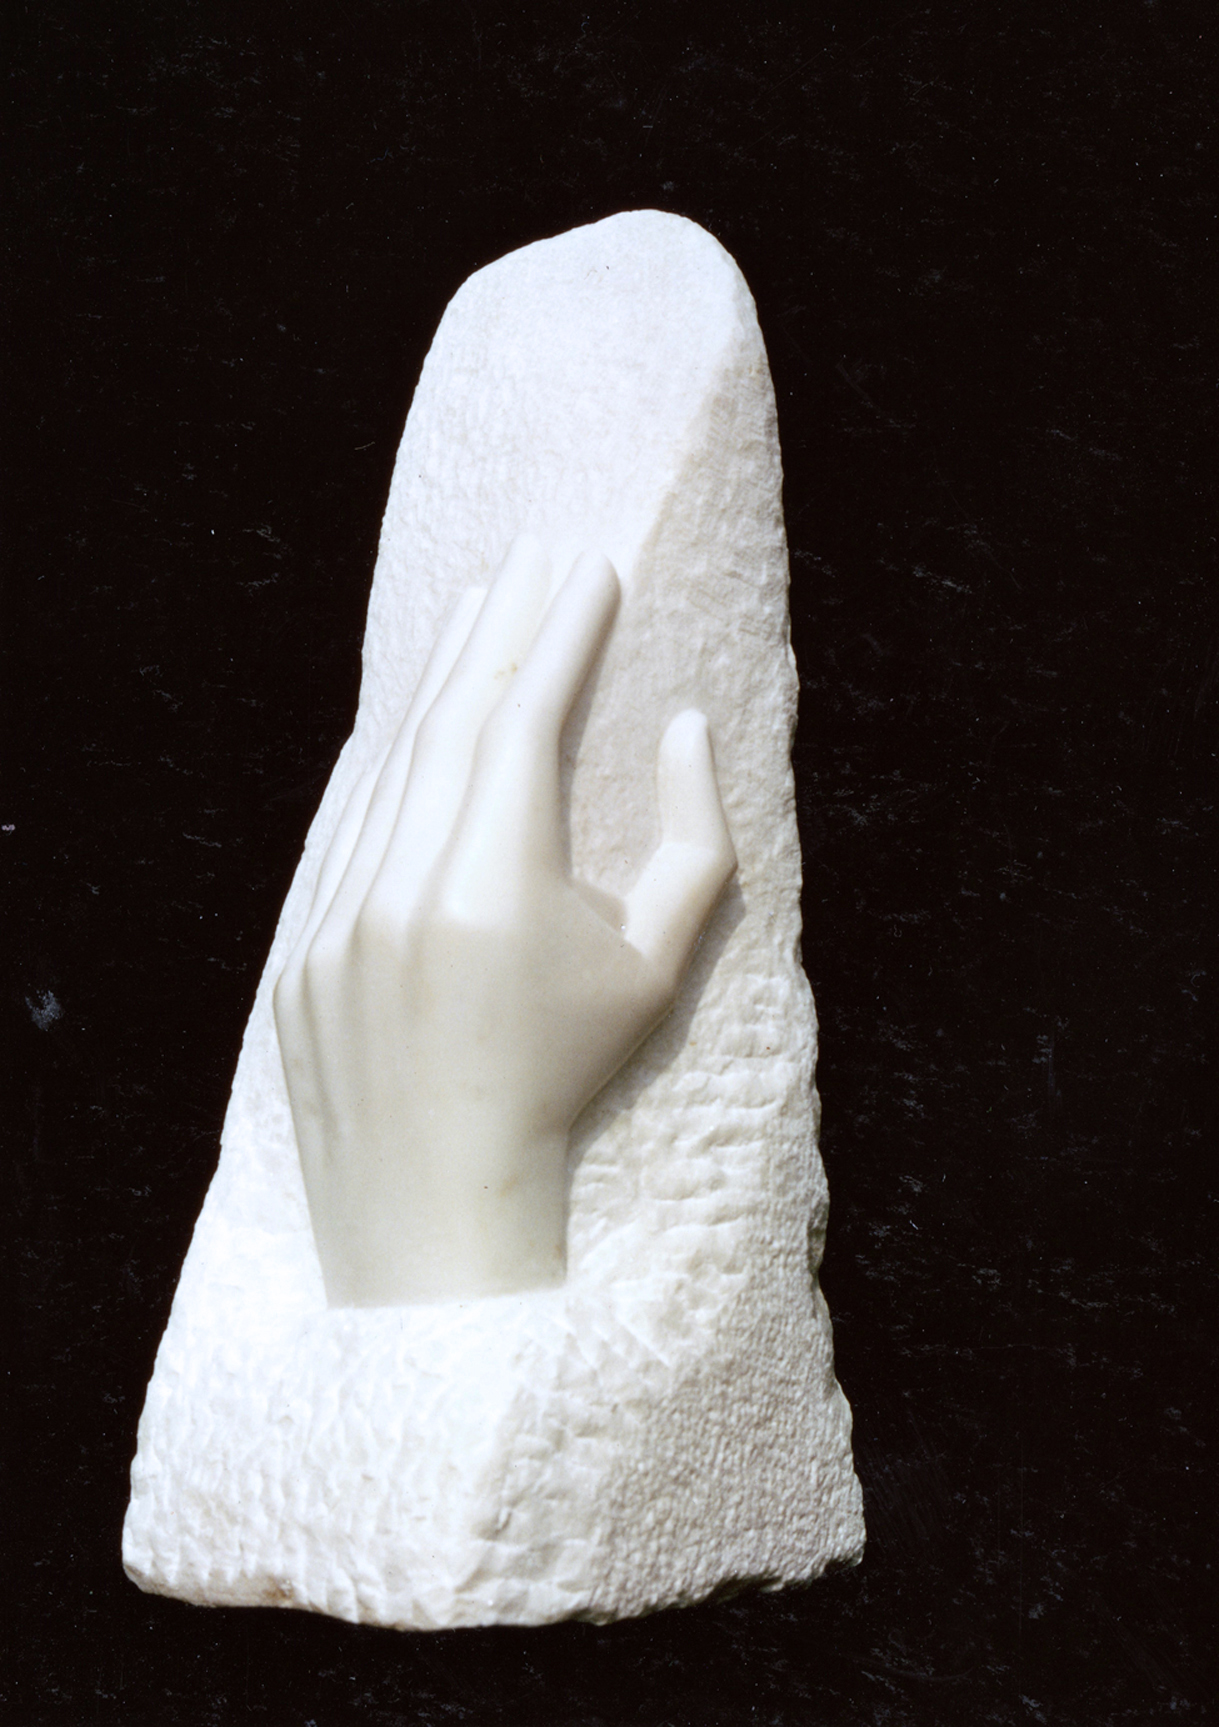 1 Etude de main 1982, marbre statuaire de Carrare, h 44 cm, collection privée